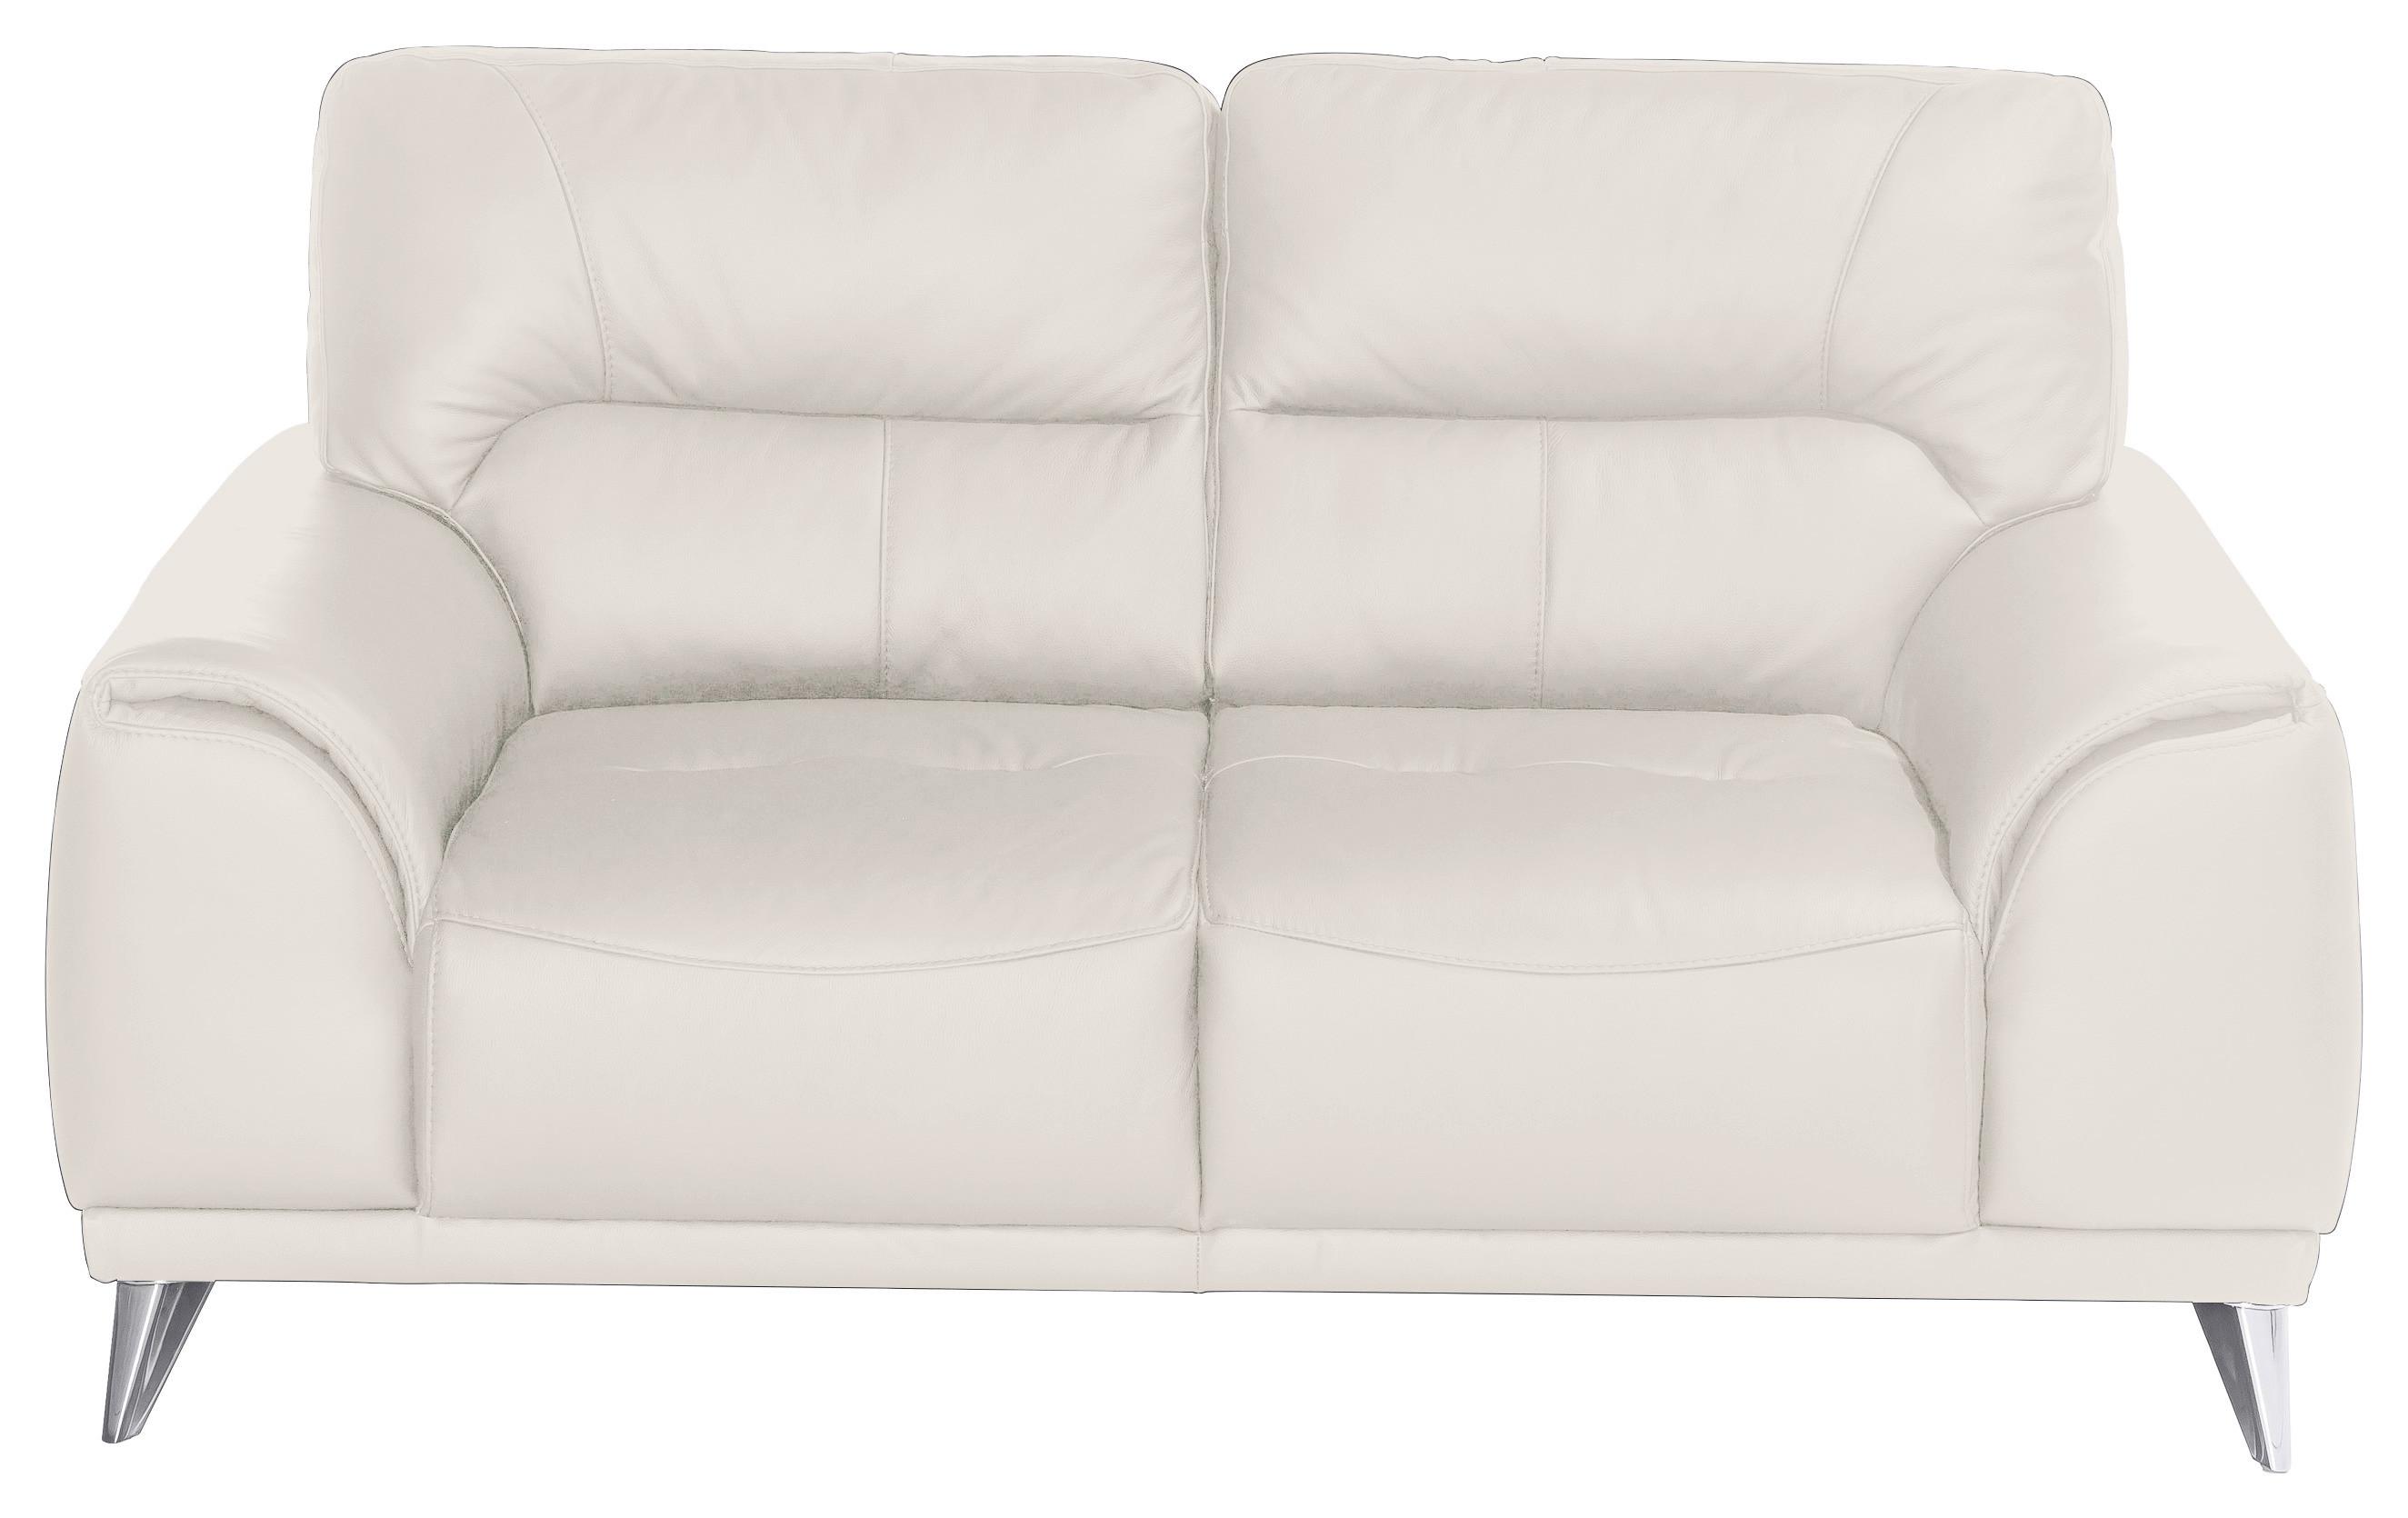 Zweisitzer-Sofa Frisco, Lederlook - Chromfarben/Weiß, MODERN, Textil (166/92/96cm) - MID.YOU